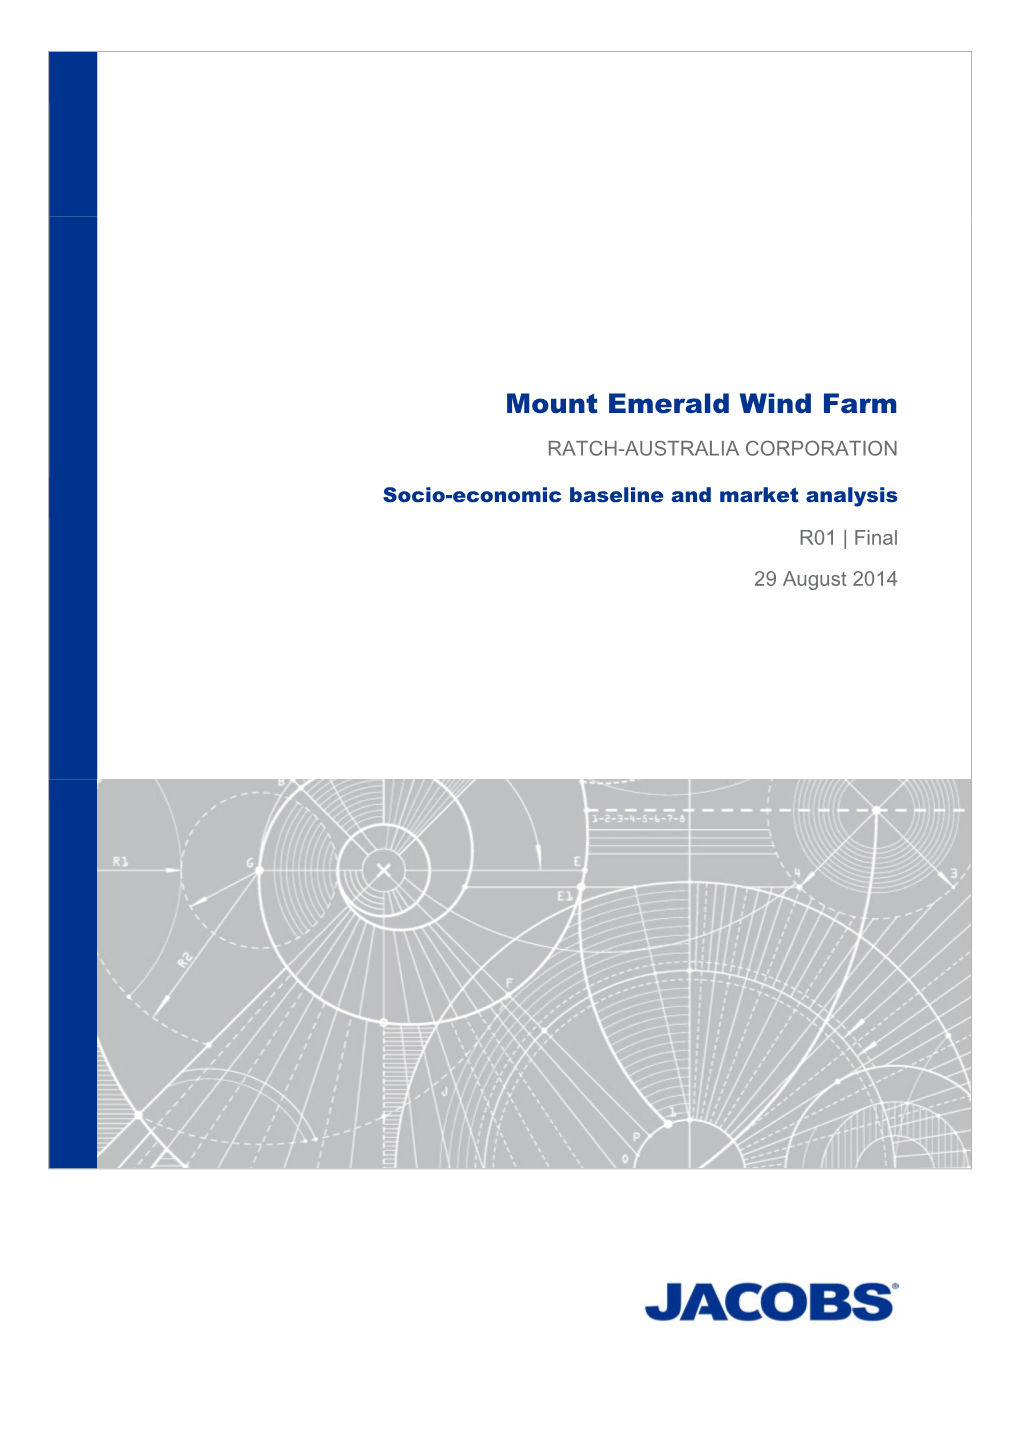 Mount Emerald Wind Farm RATCH-AUSTRALIA CORPORATION